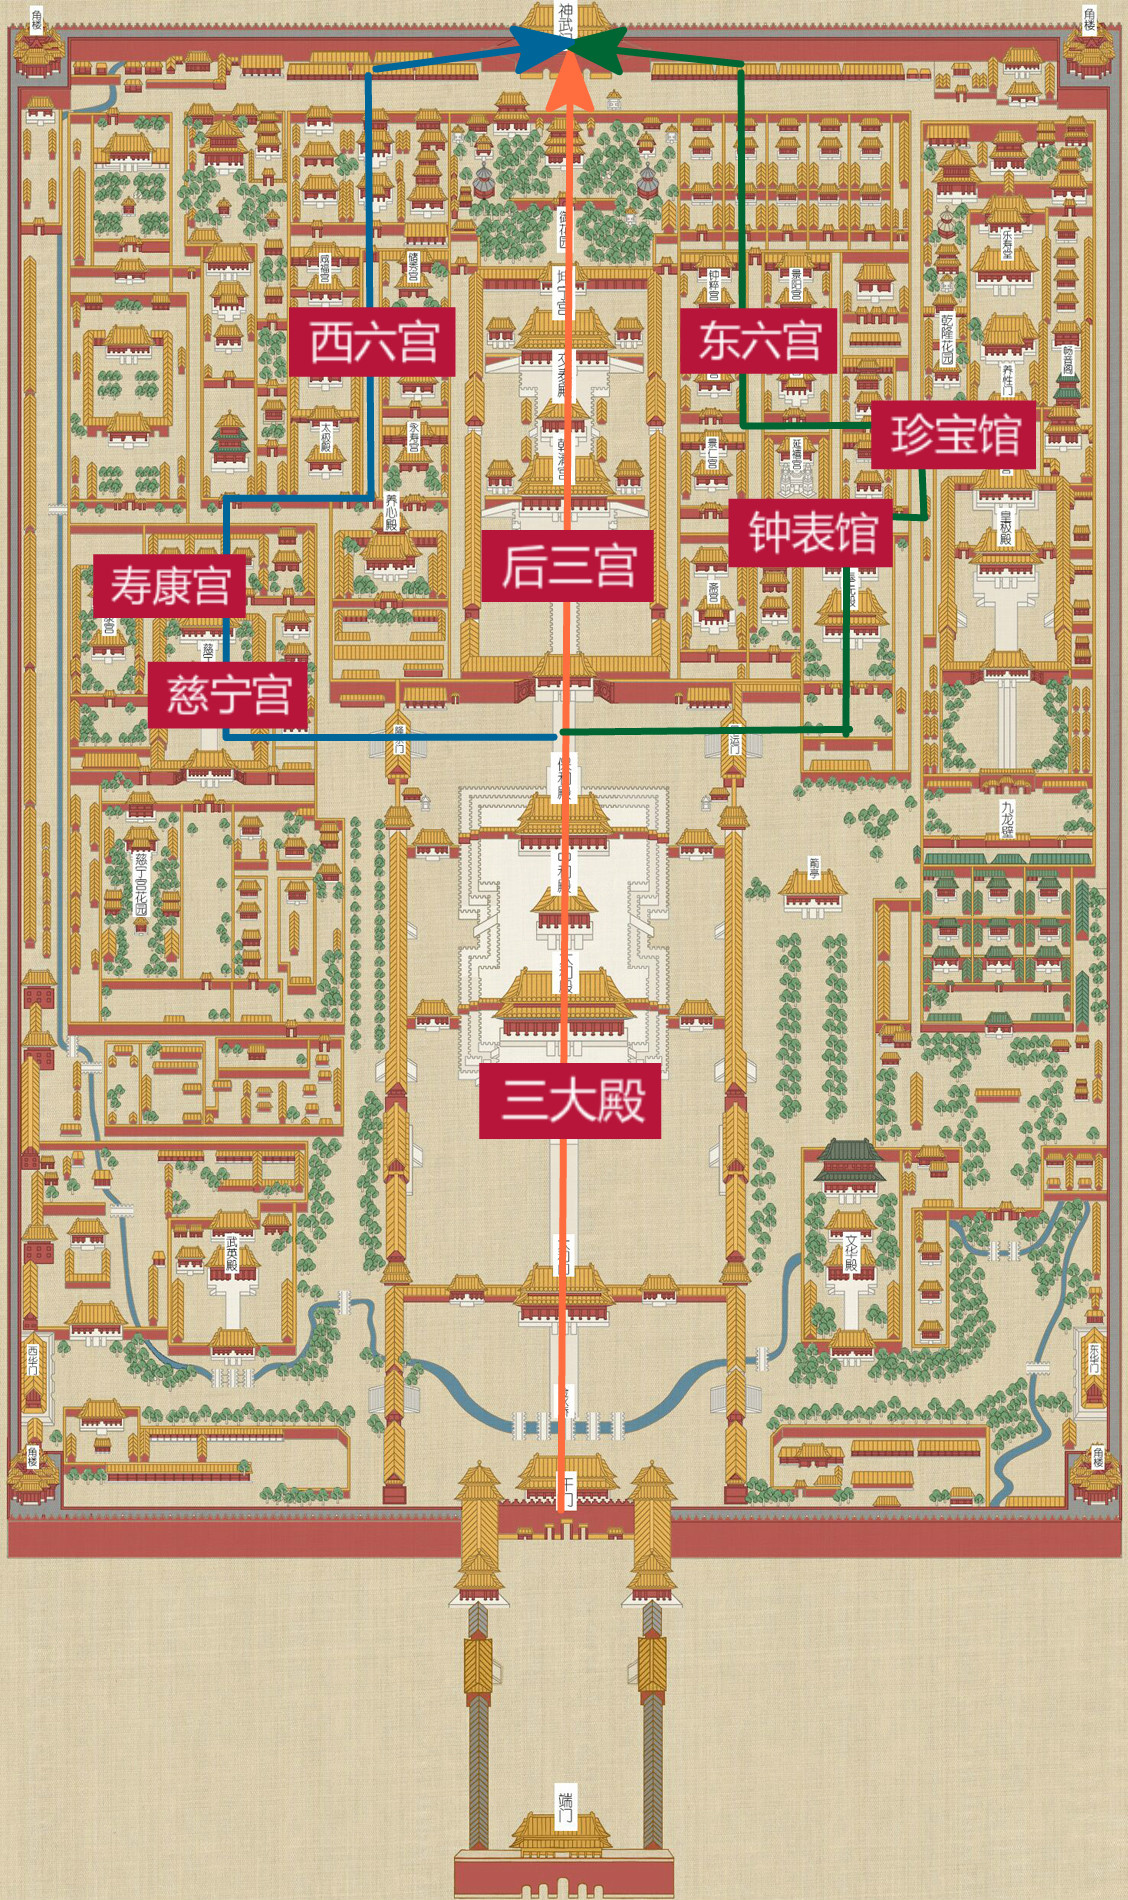 故宫游玩线路图 via 故宫博物院官方网站 中线(红色)  故宫中轴线